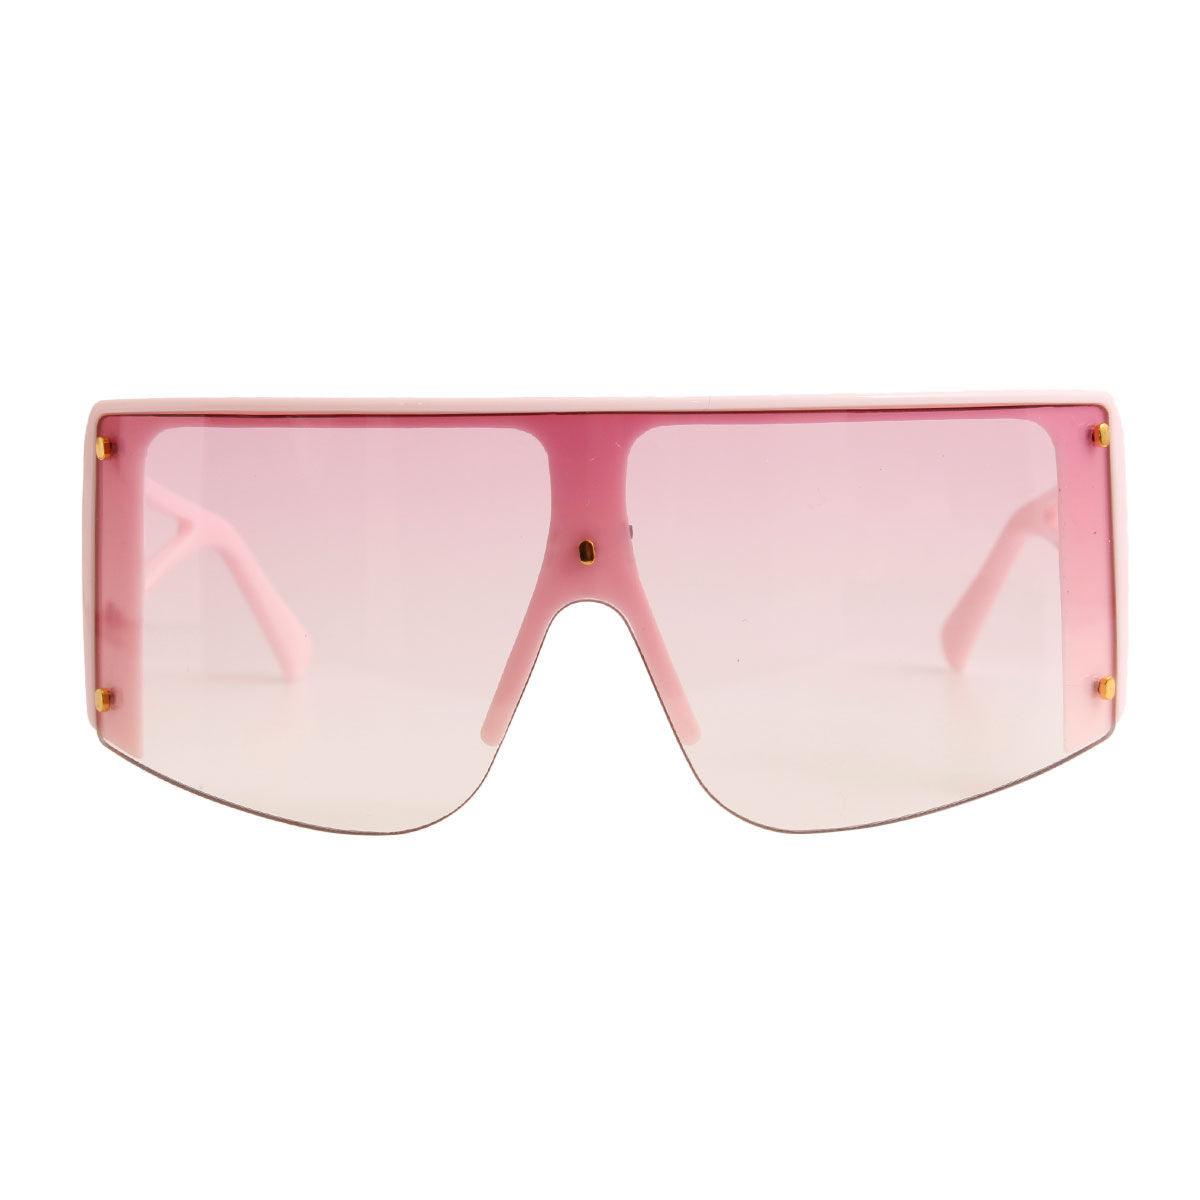 Pink Frame Visor Elevate Stylish Sunglasses for Women